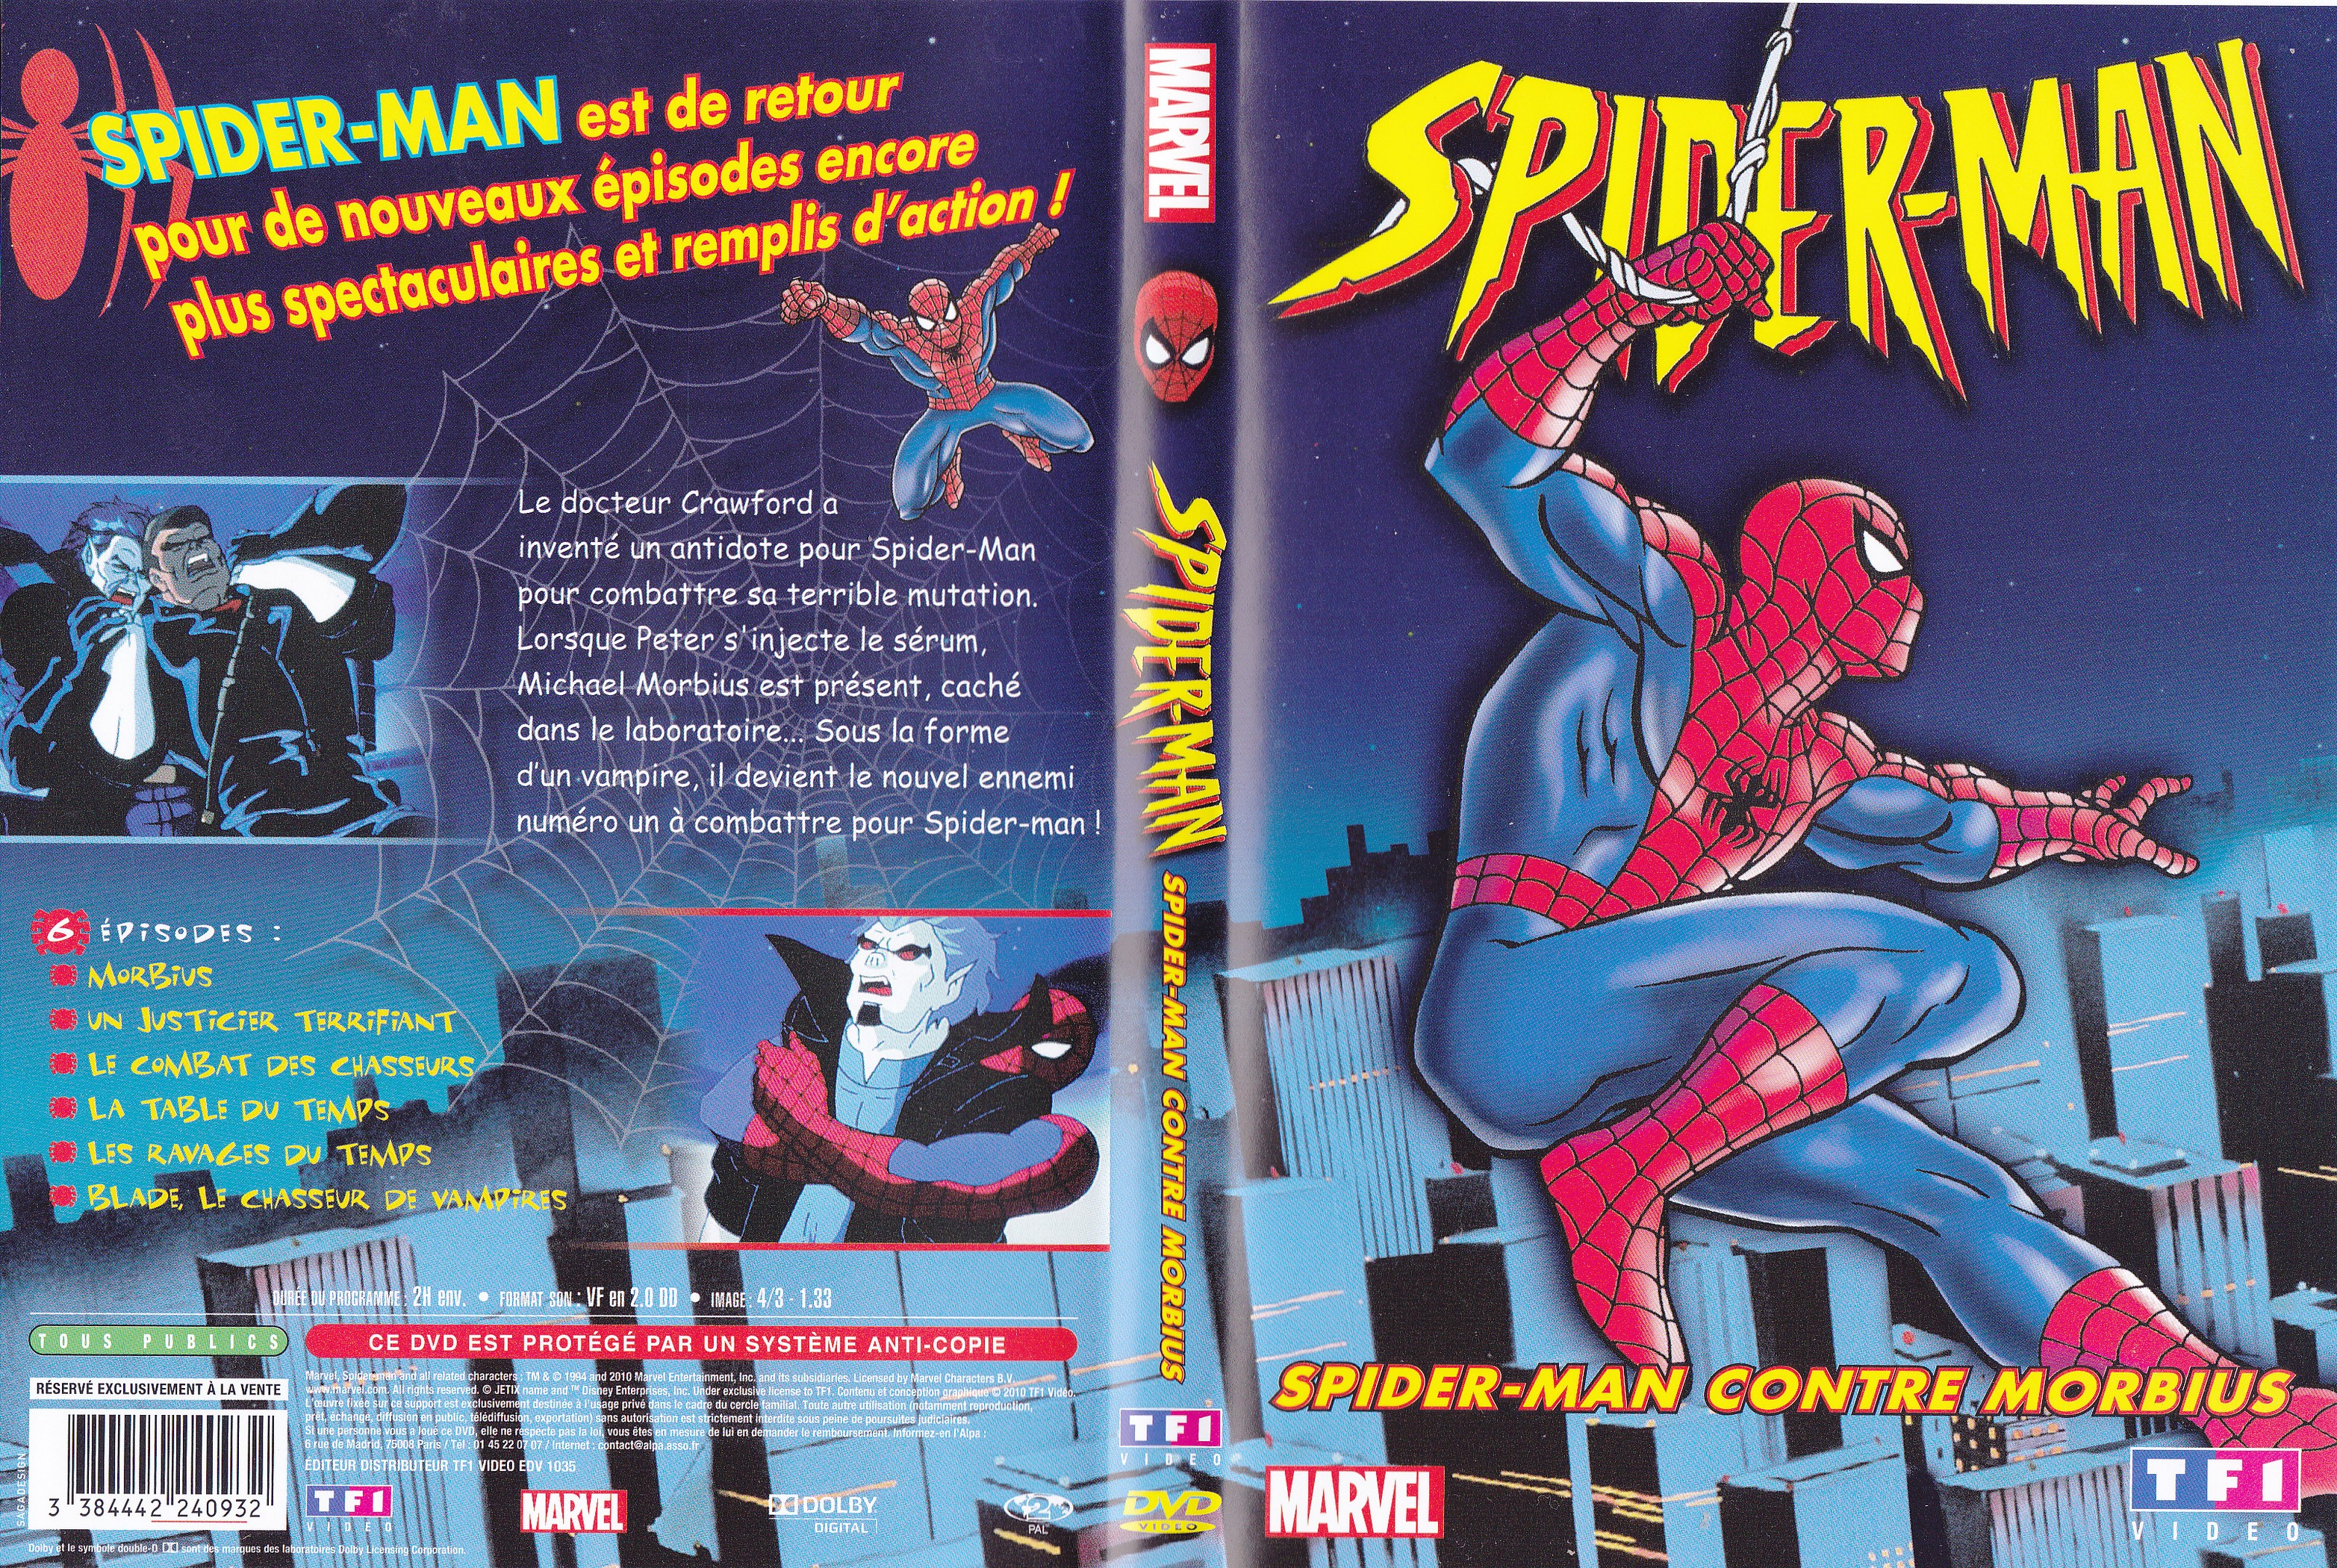 Jaquette DVD Spiderman - Spiderman contre morbius (DA)